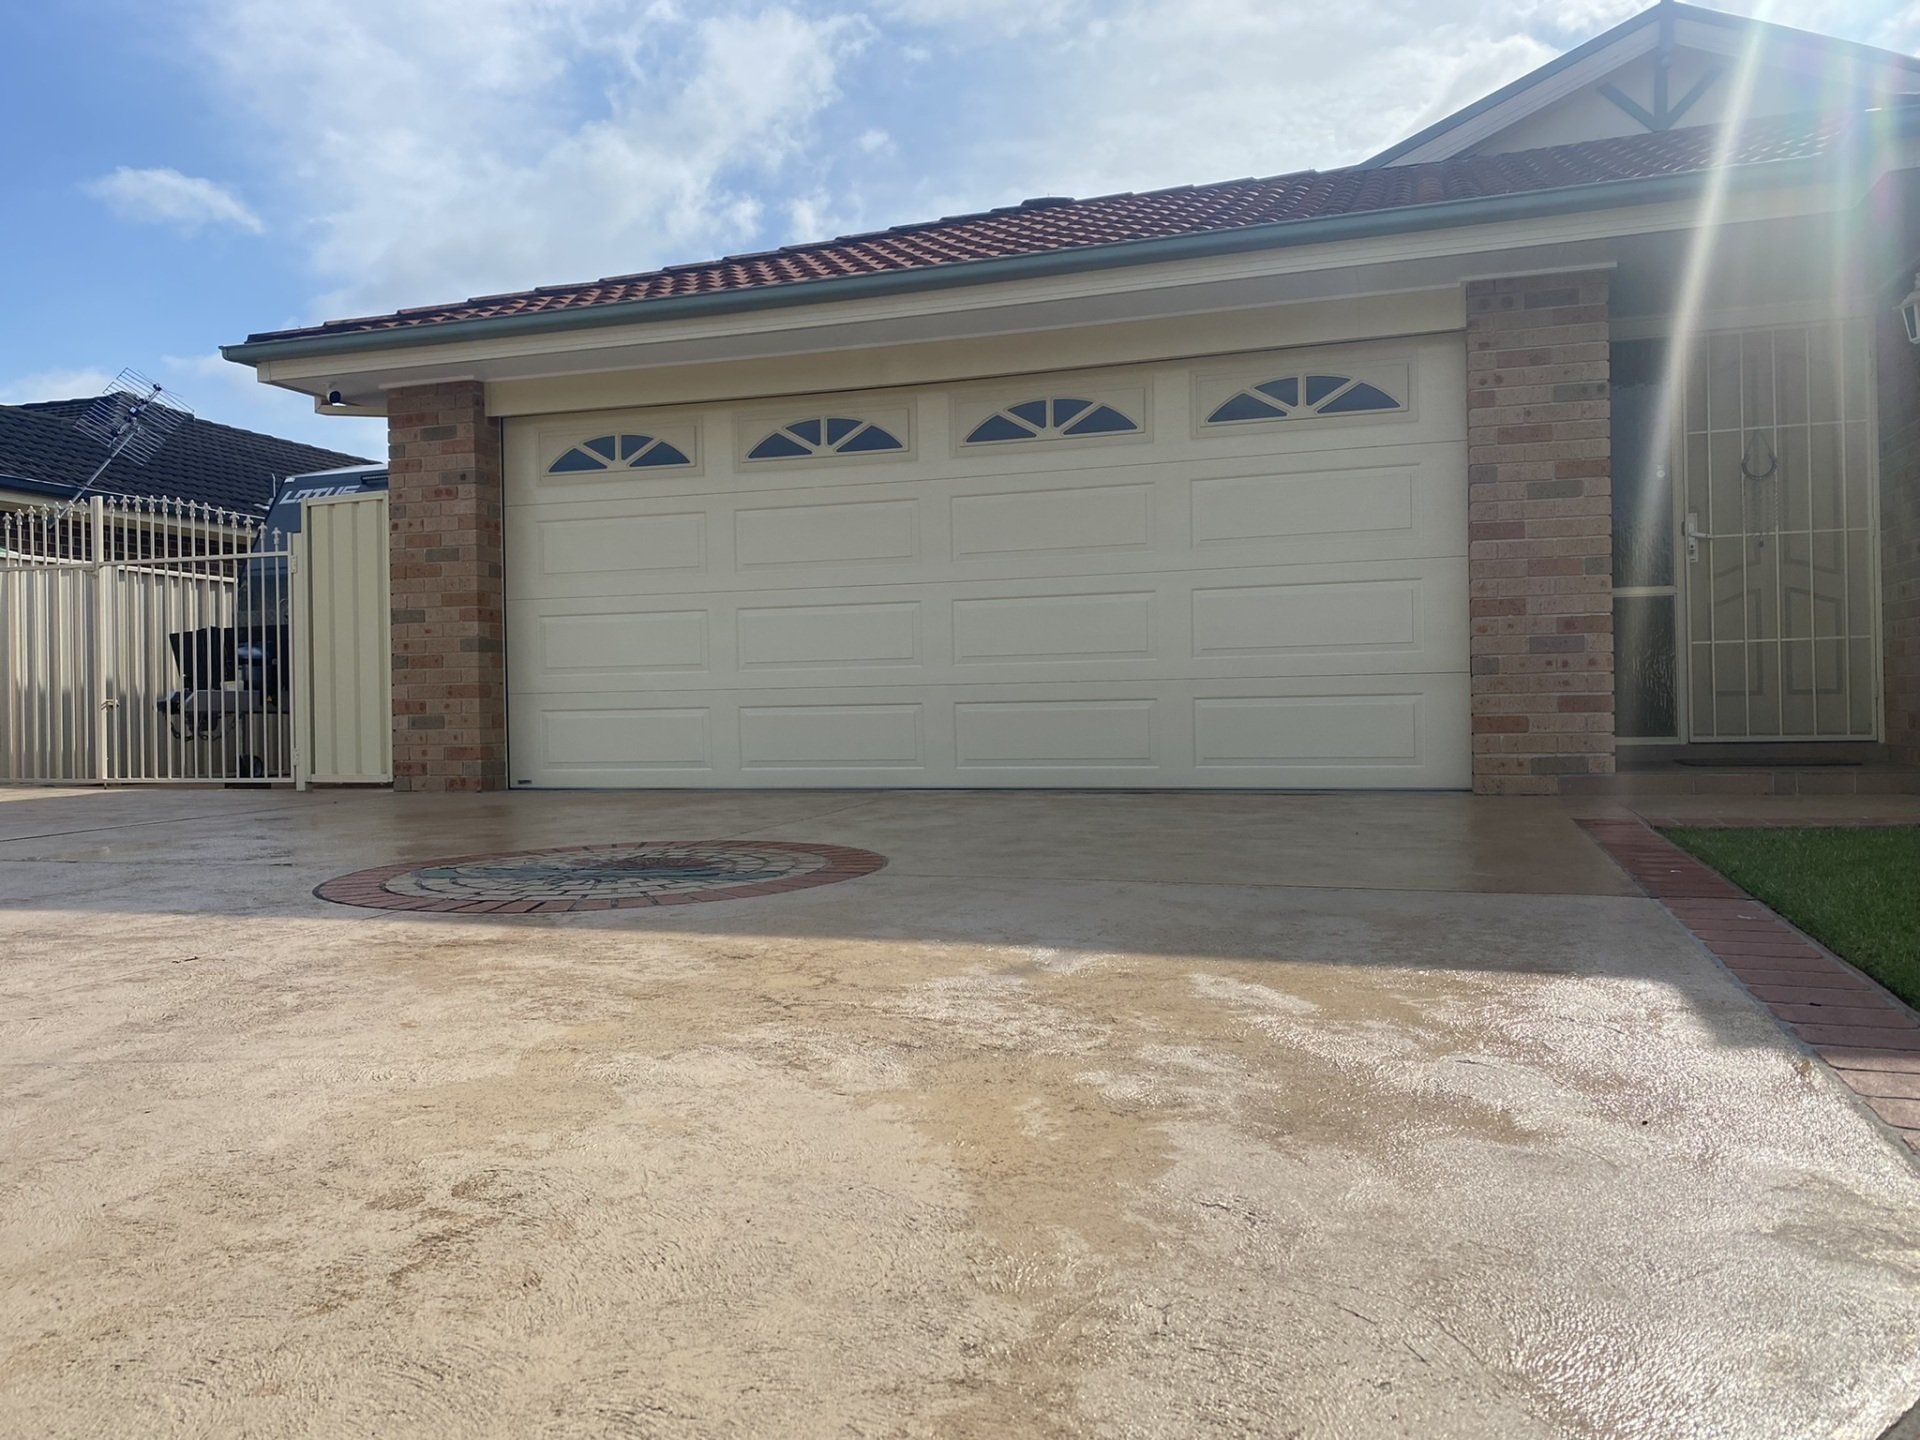 Completed Garage Door Installation — Roller Doors in Wollongong, NSW